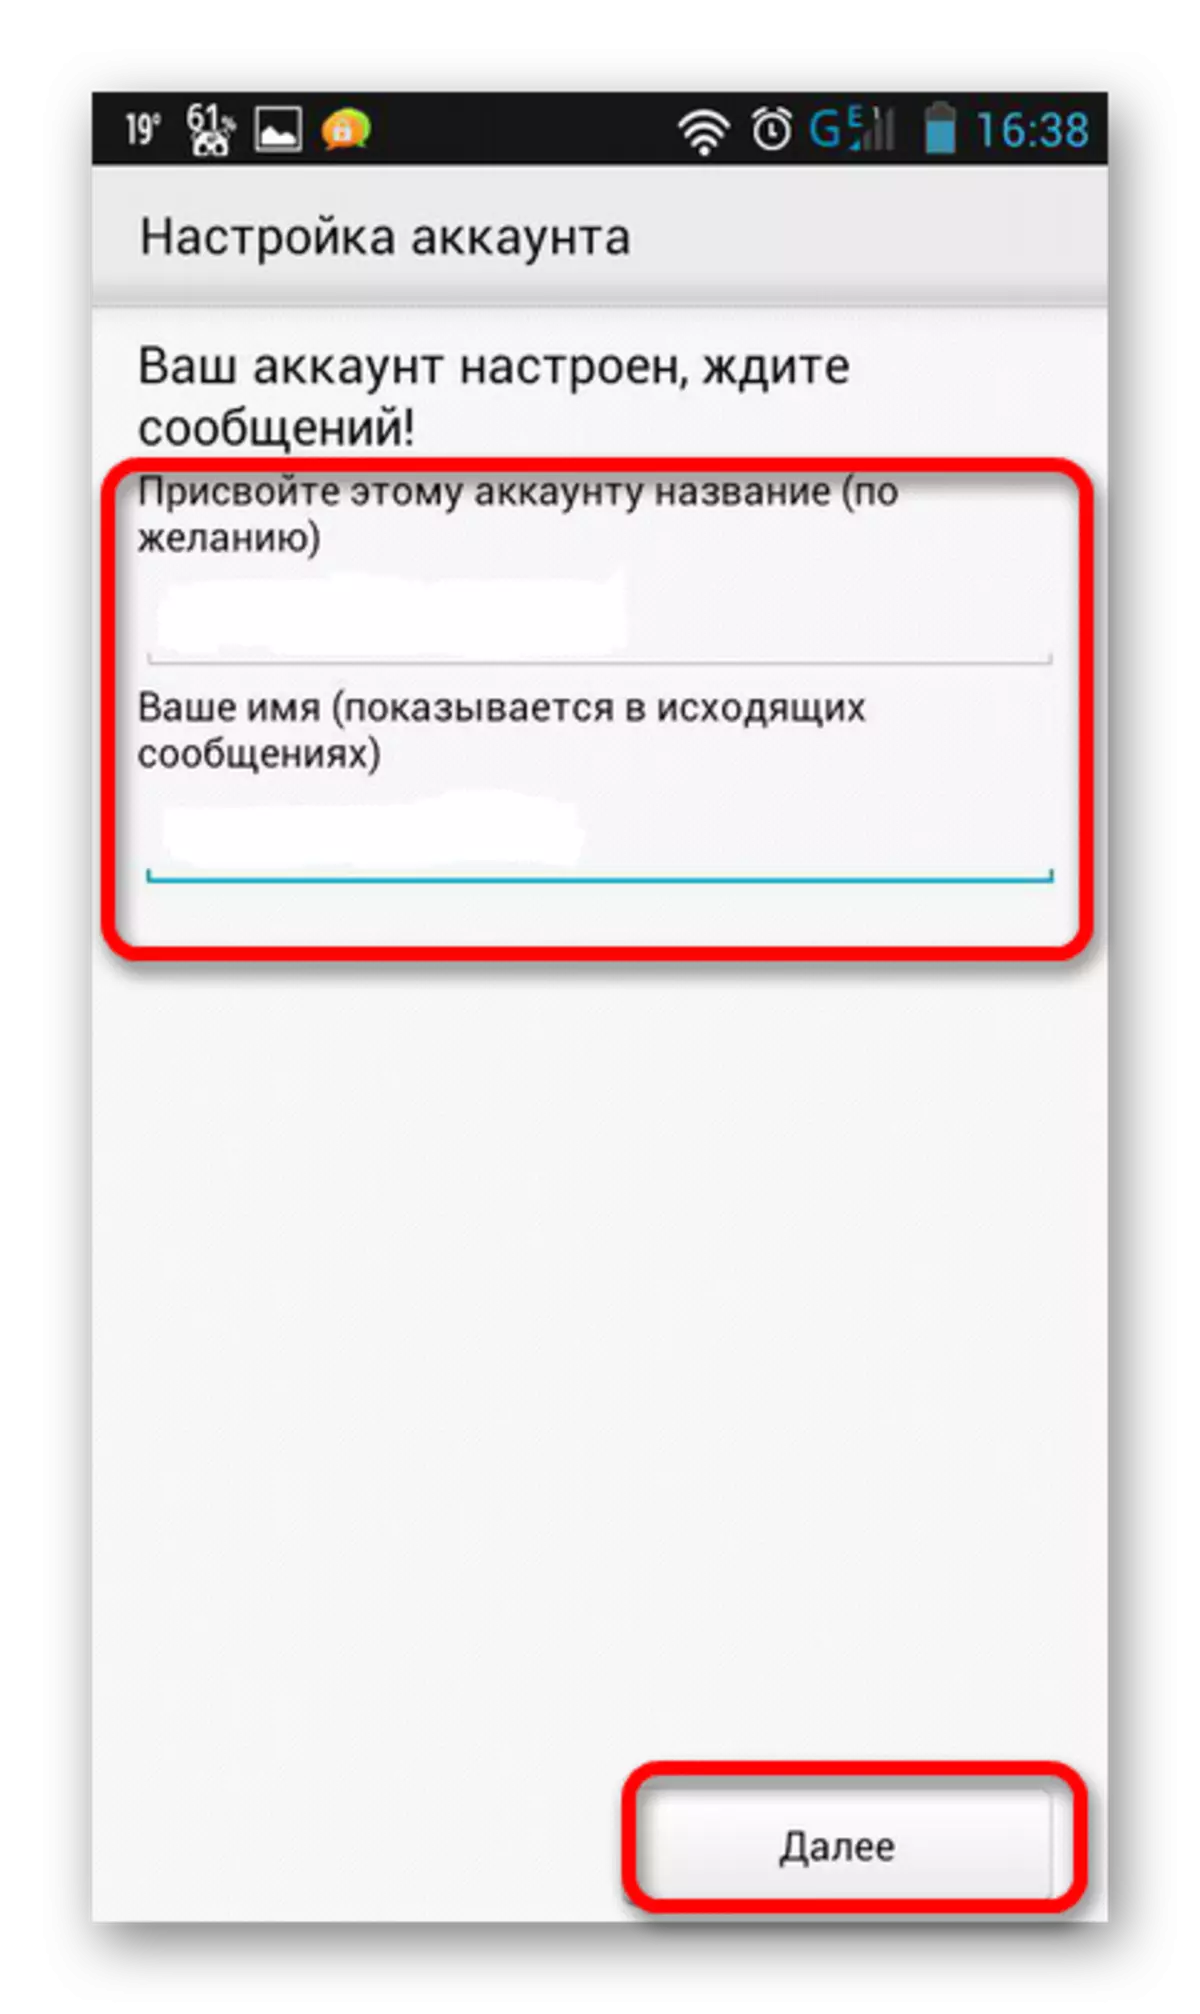 Cinwaanka iyo magaca koontada ee ku saabsan Yandex Mail